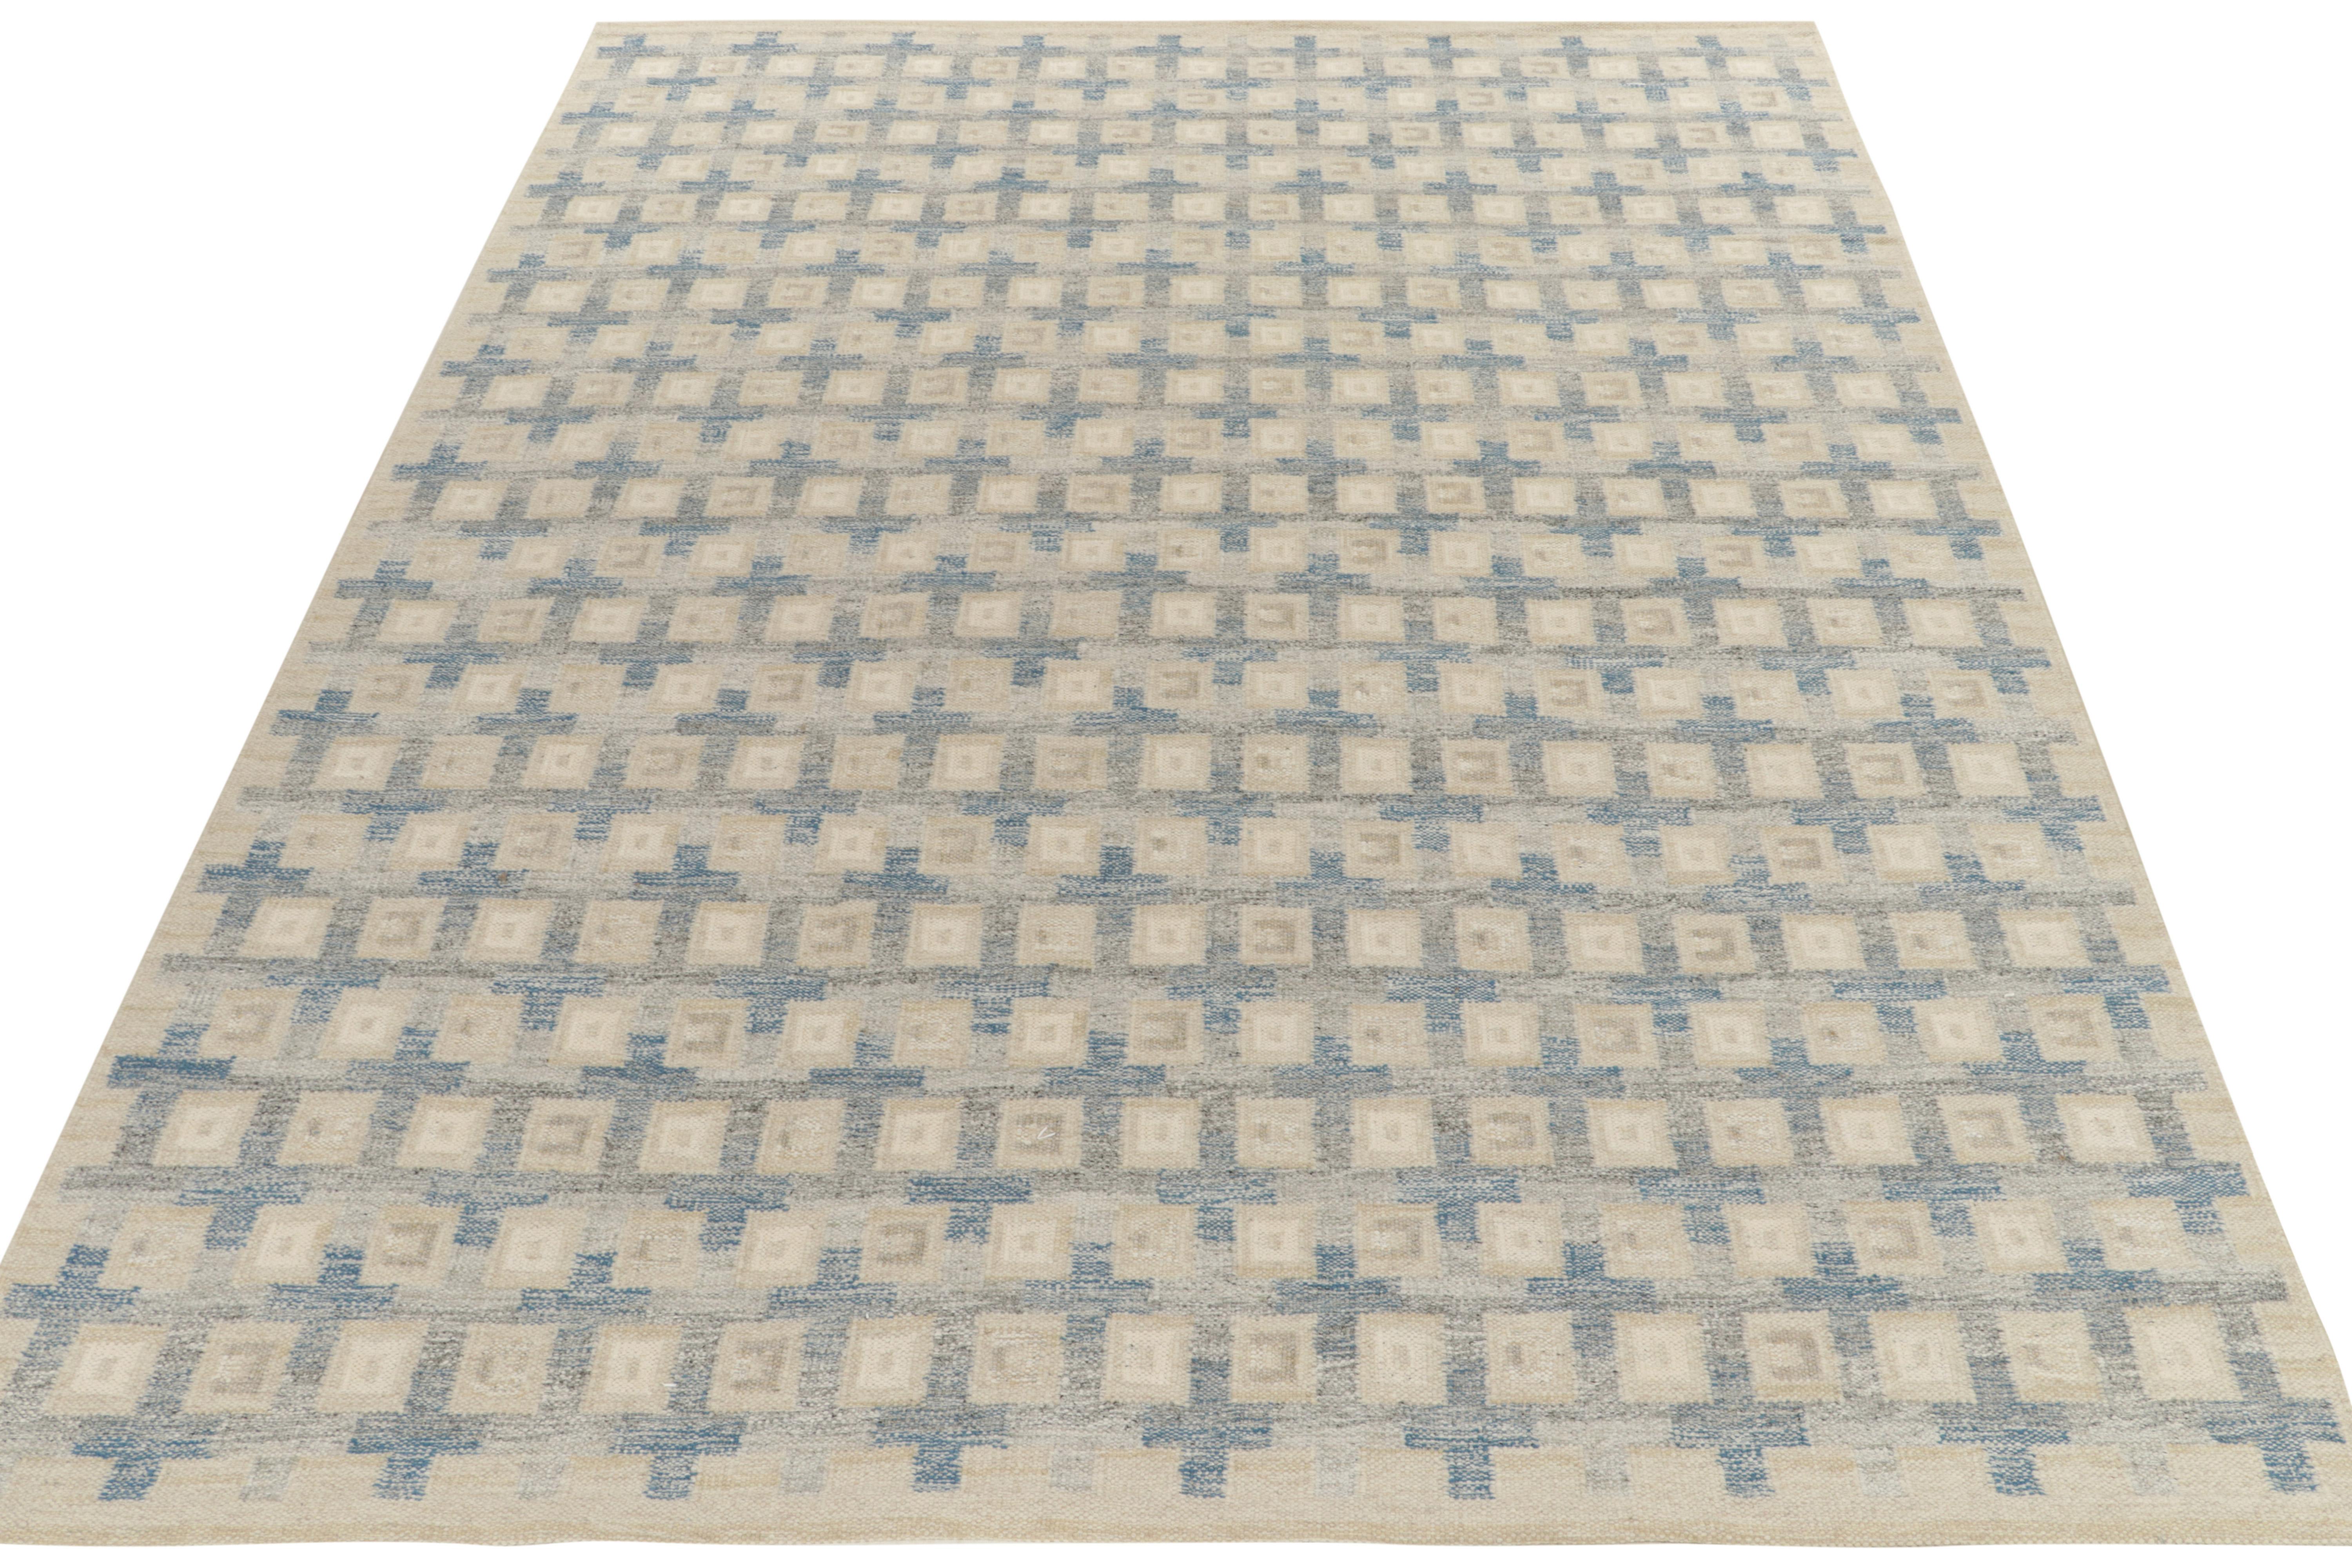 Ein handgewebtes Flachgewebe aus der preisgekrönten skandinavischen Kilim-Kollektion von Rug & Kilim. Dieser 10 x 14 große Teppich veranschaulicht die strukturelle Sensibilität der Linie, da er das geometrische Muster im Stil der Jahrhundertmitte